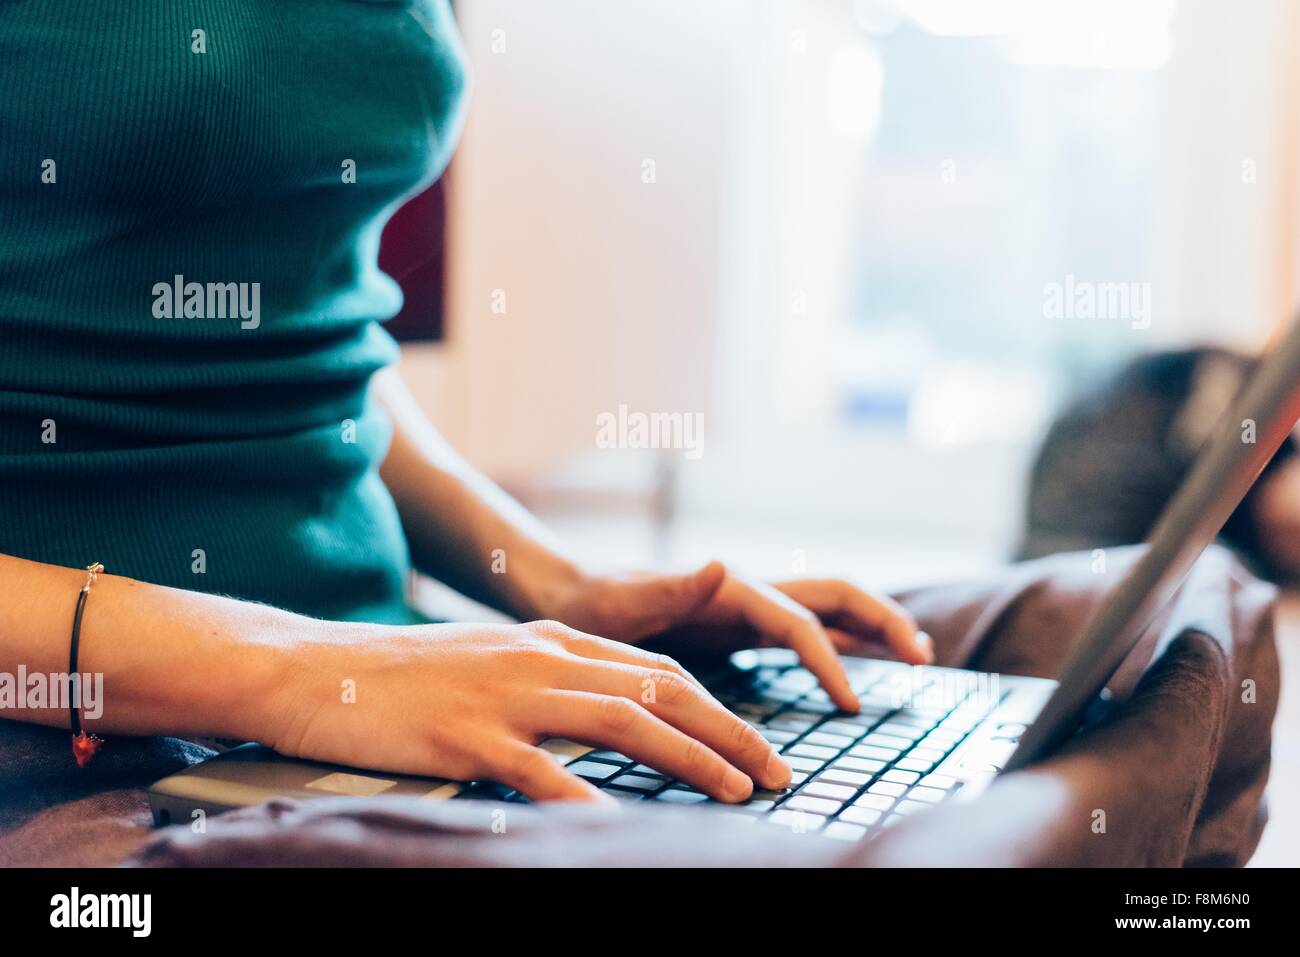 Beschnitten Innenfeldes Mitte erwachsenen Frau Tippen auf Laptop-computer Stockfoto